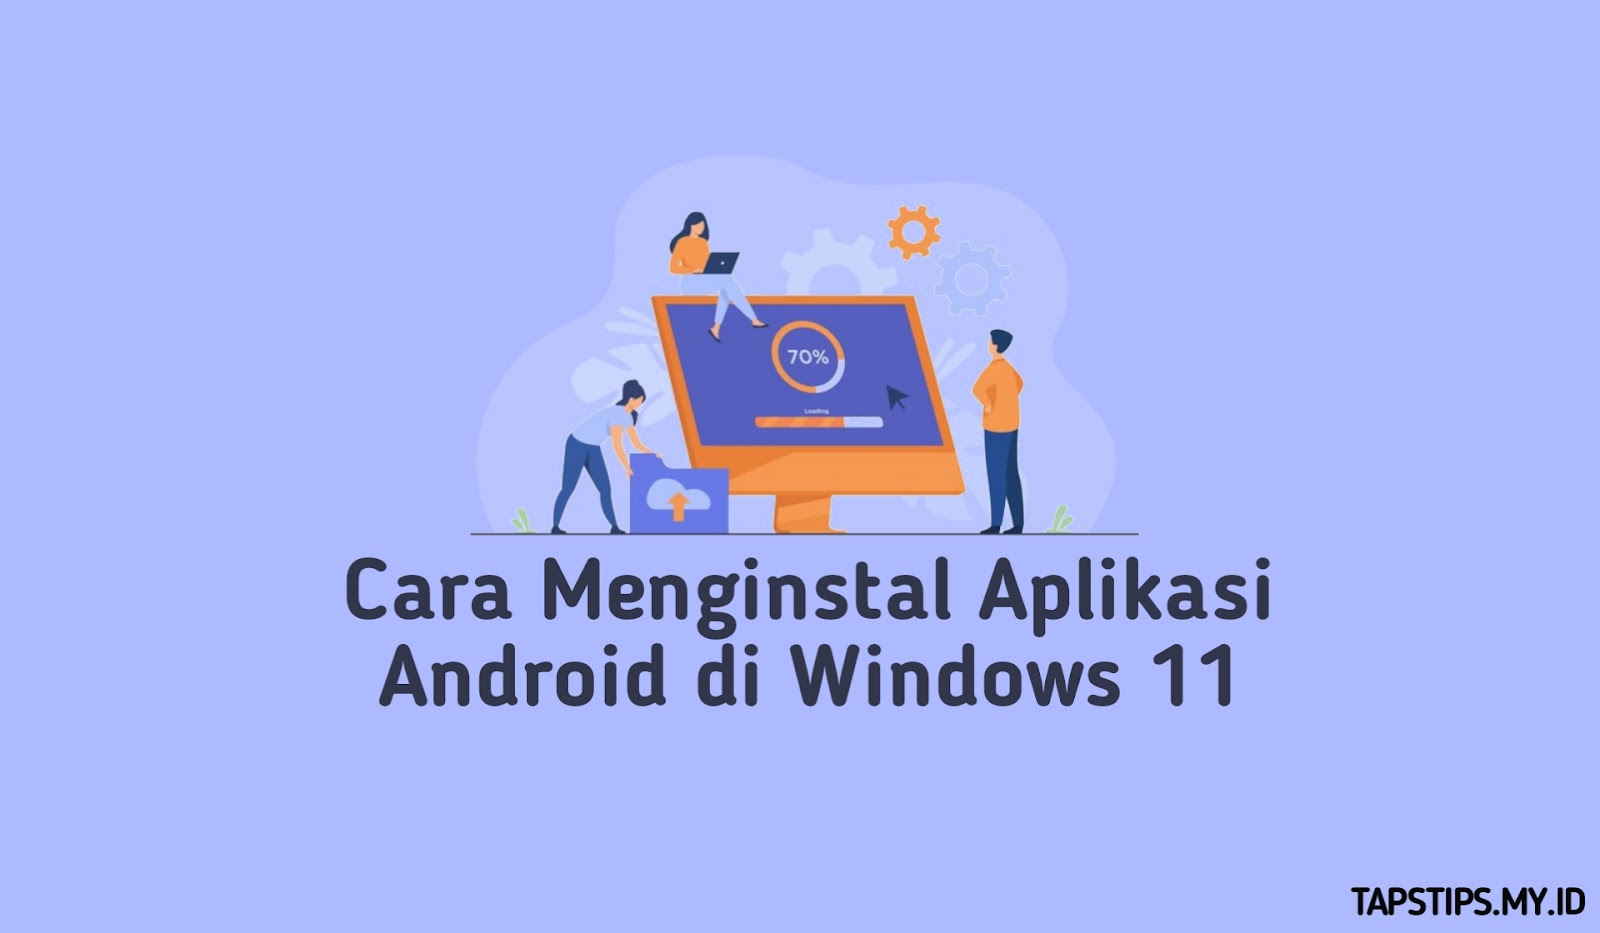 Cara Menginstal Aplikasi Android di Windows 11